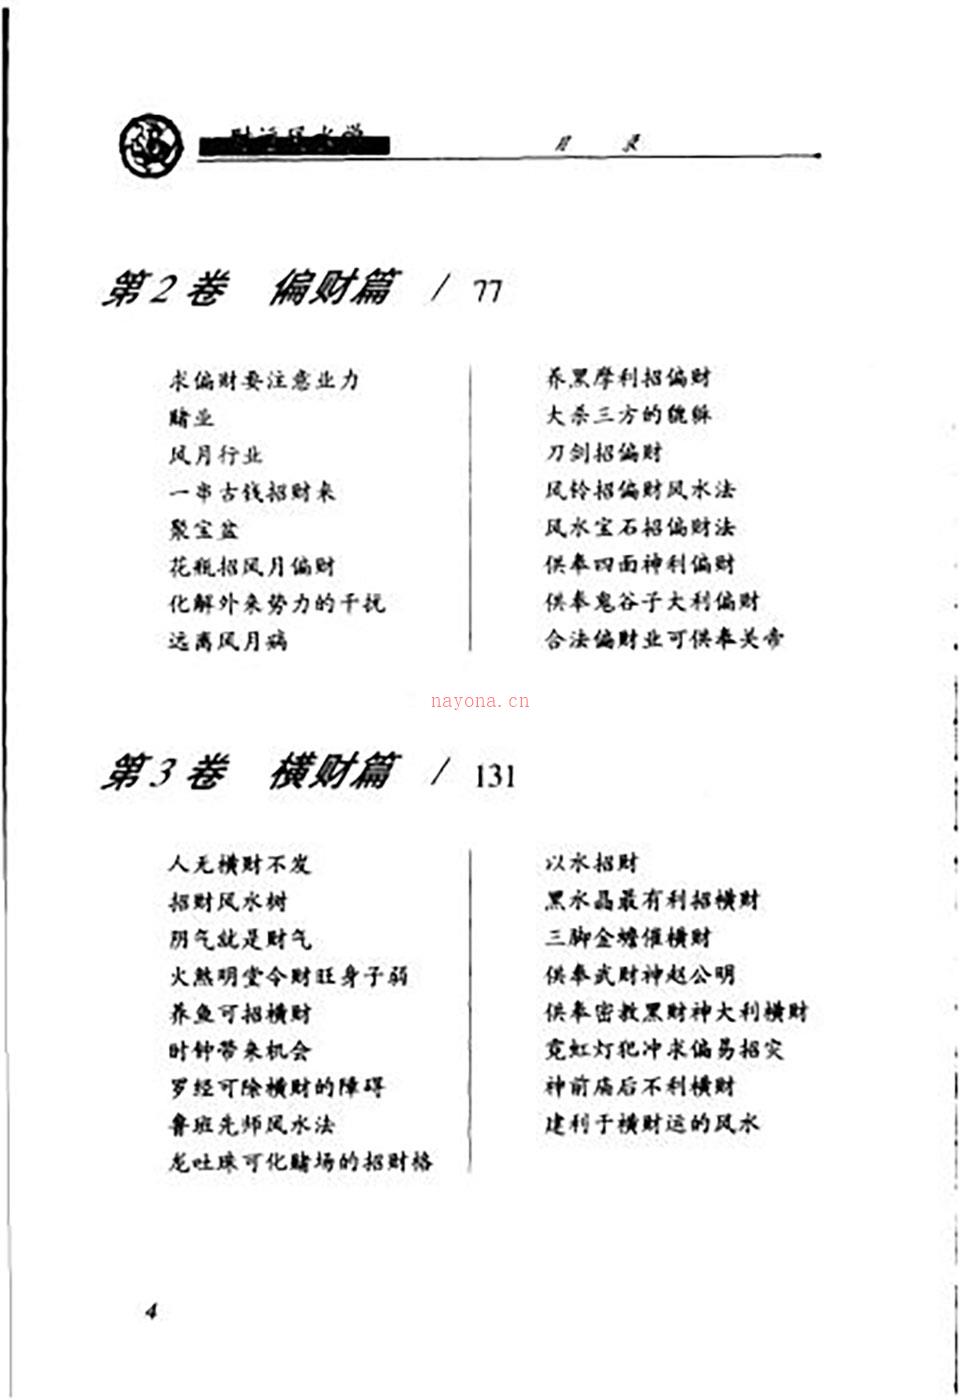 邵伟华-财运风水学318页.pdf 百度网盘资源